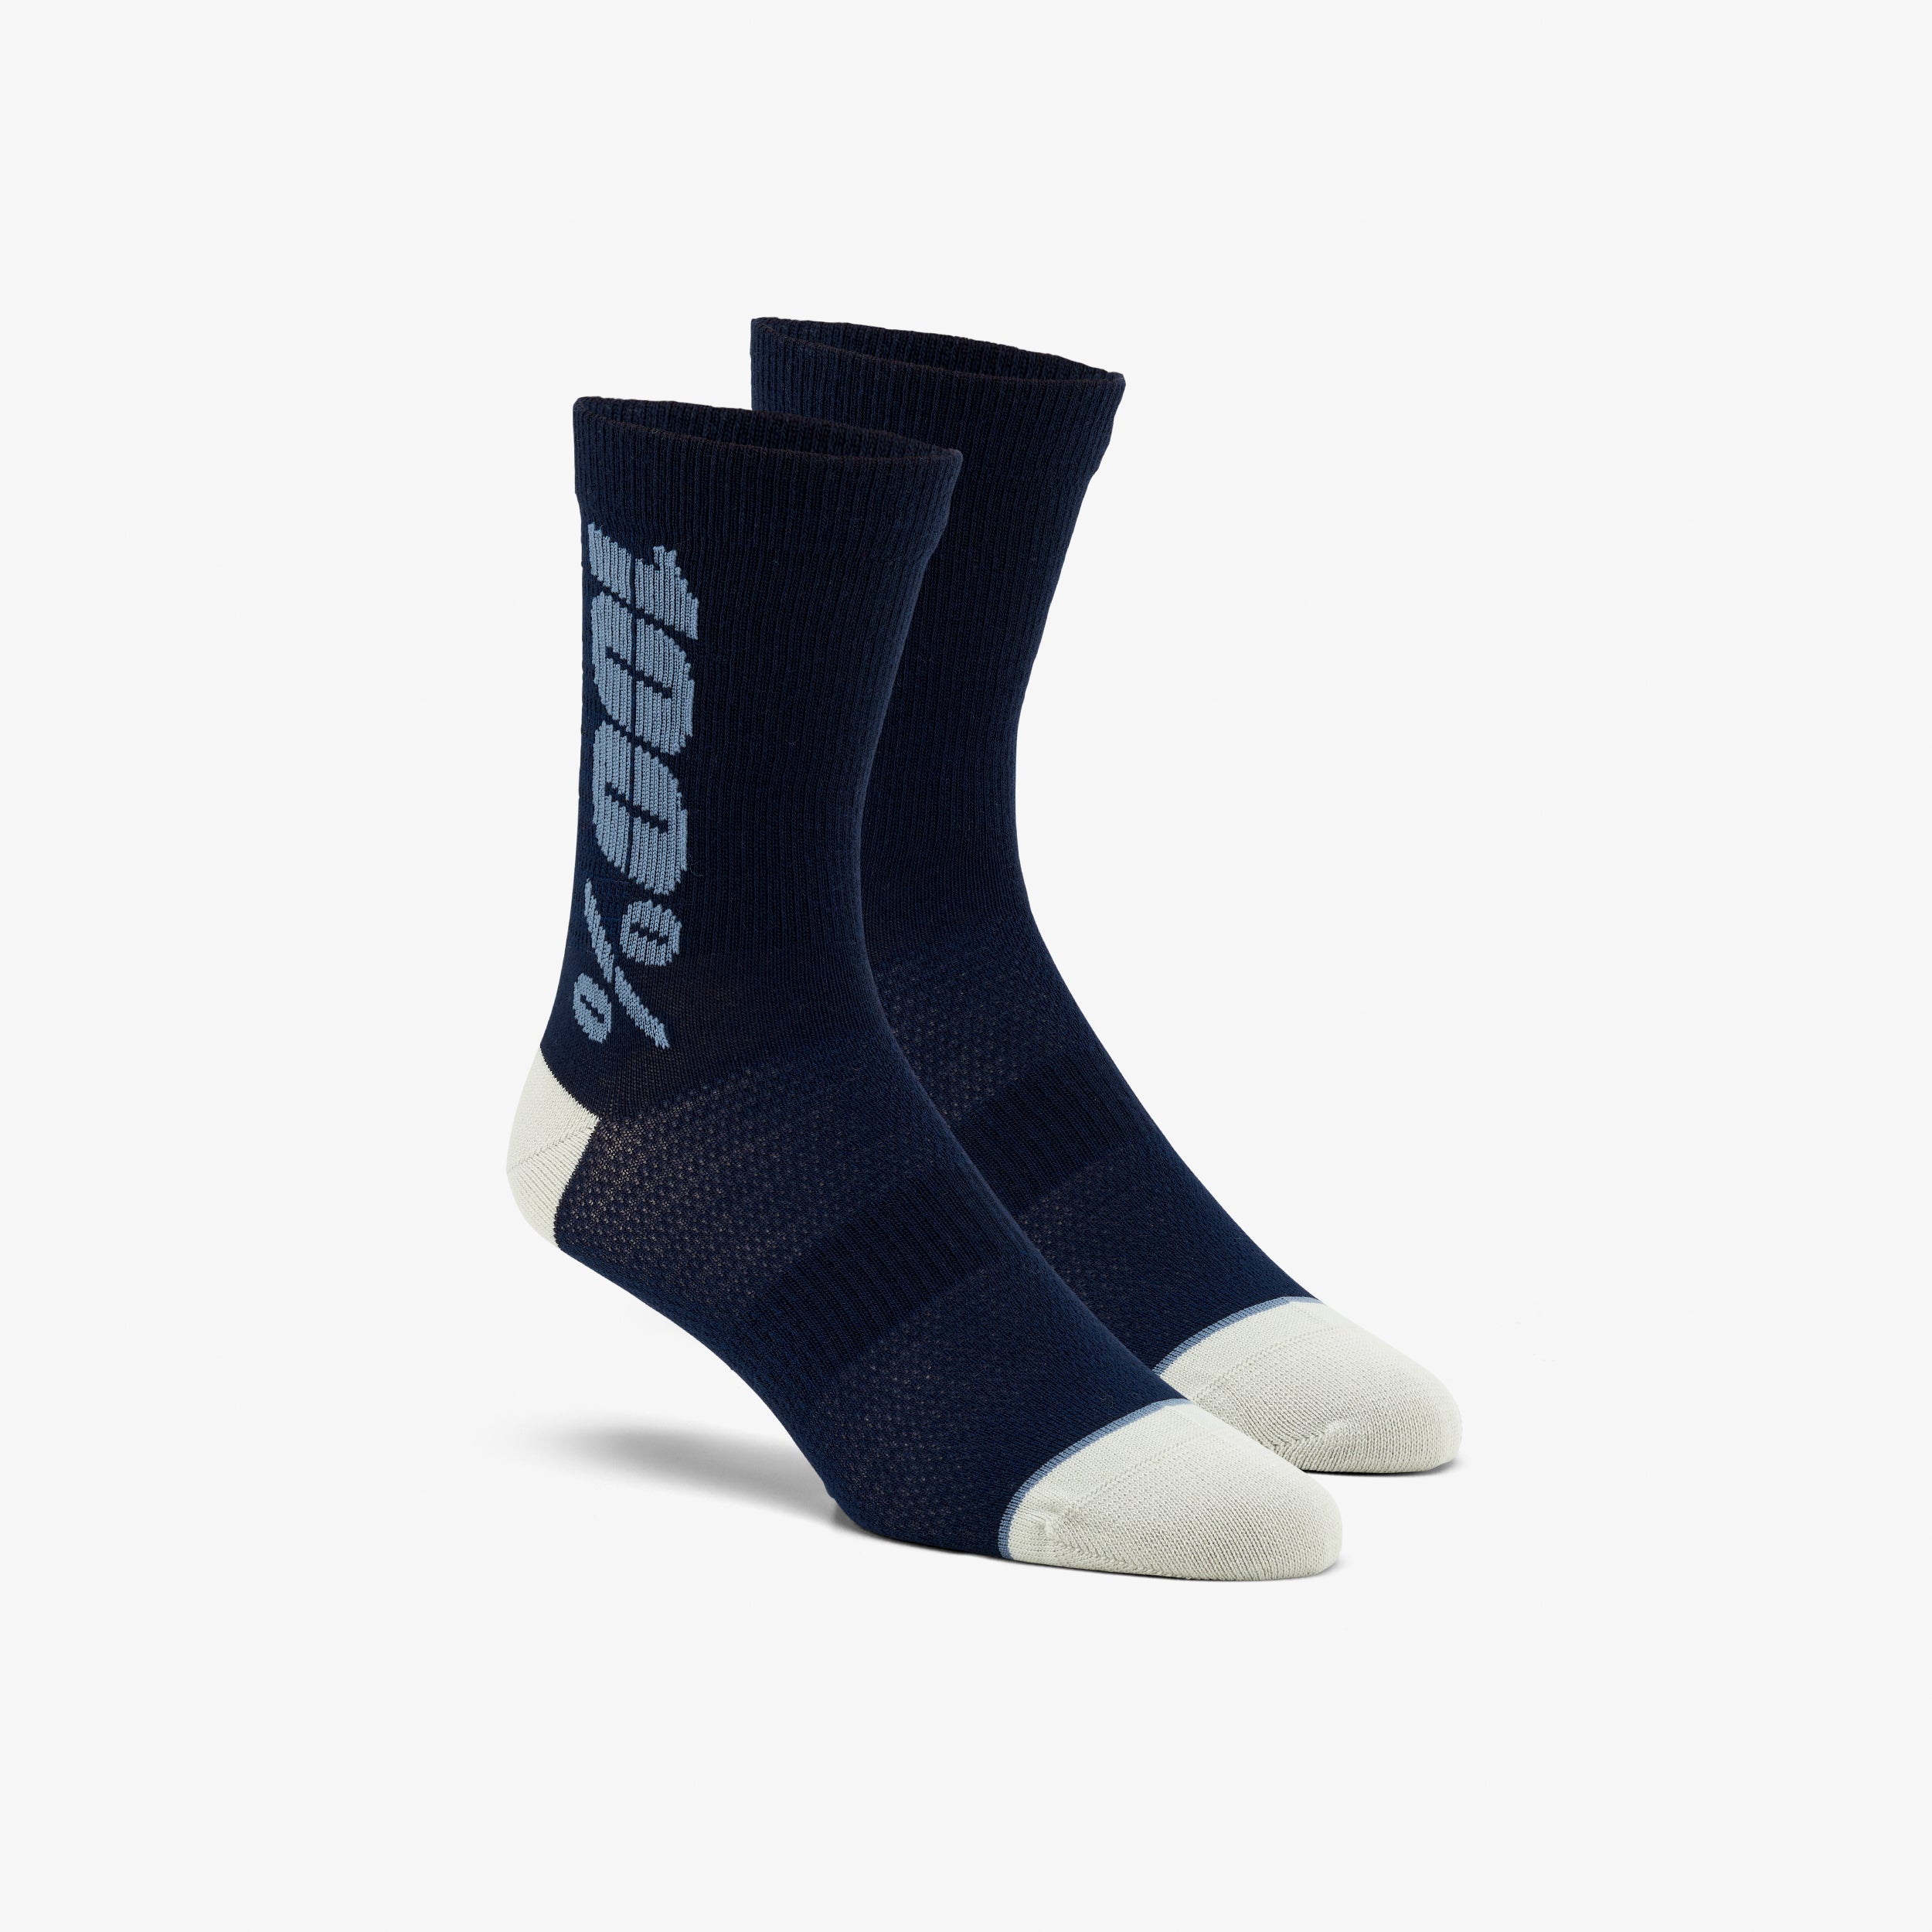 RYTHYM Merino Wool Performance Socks Navy/Slate